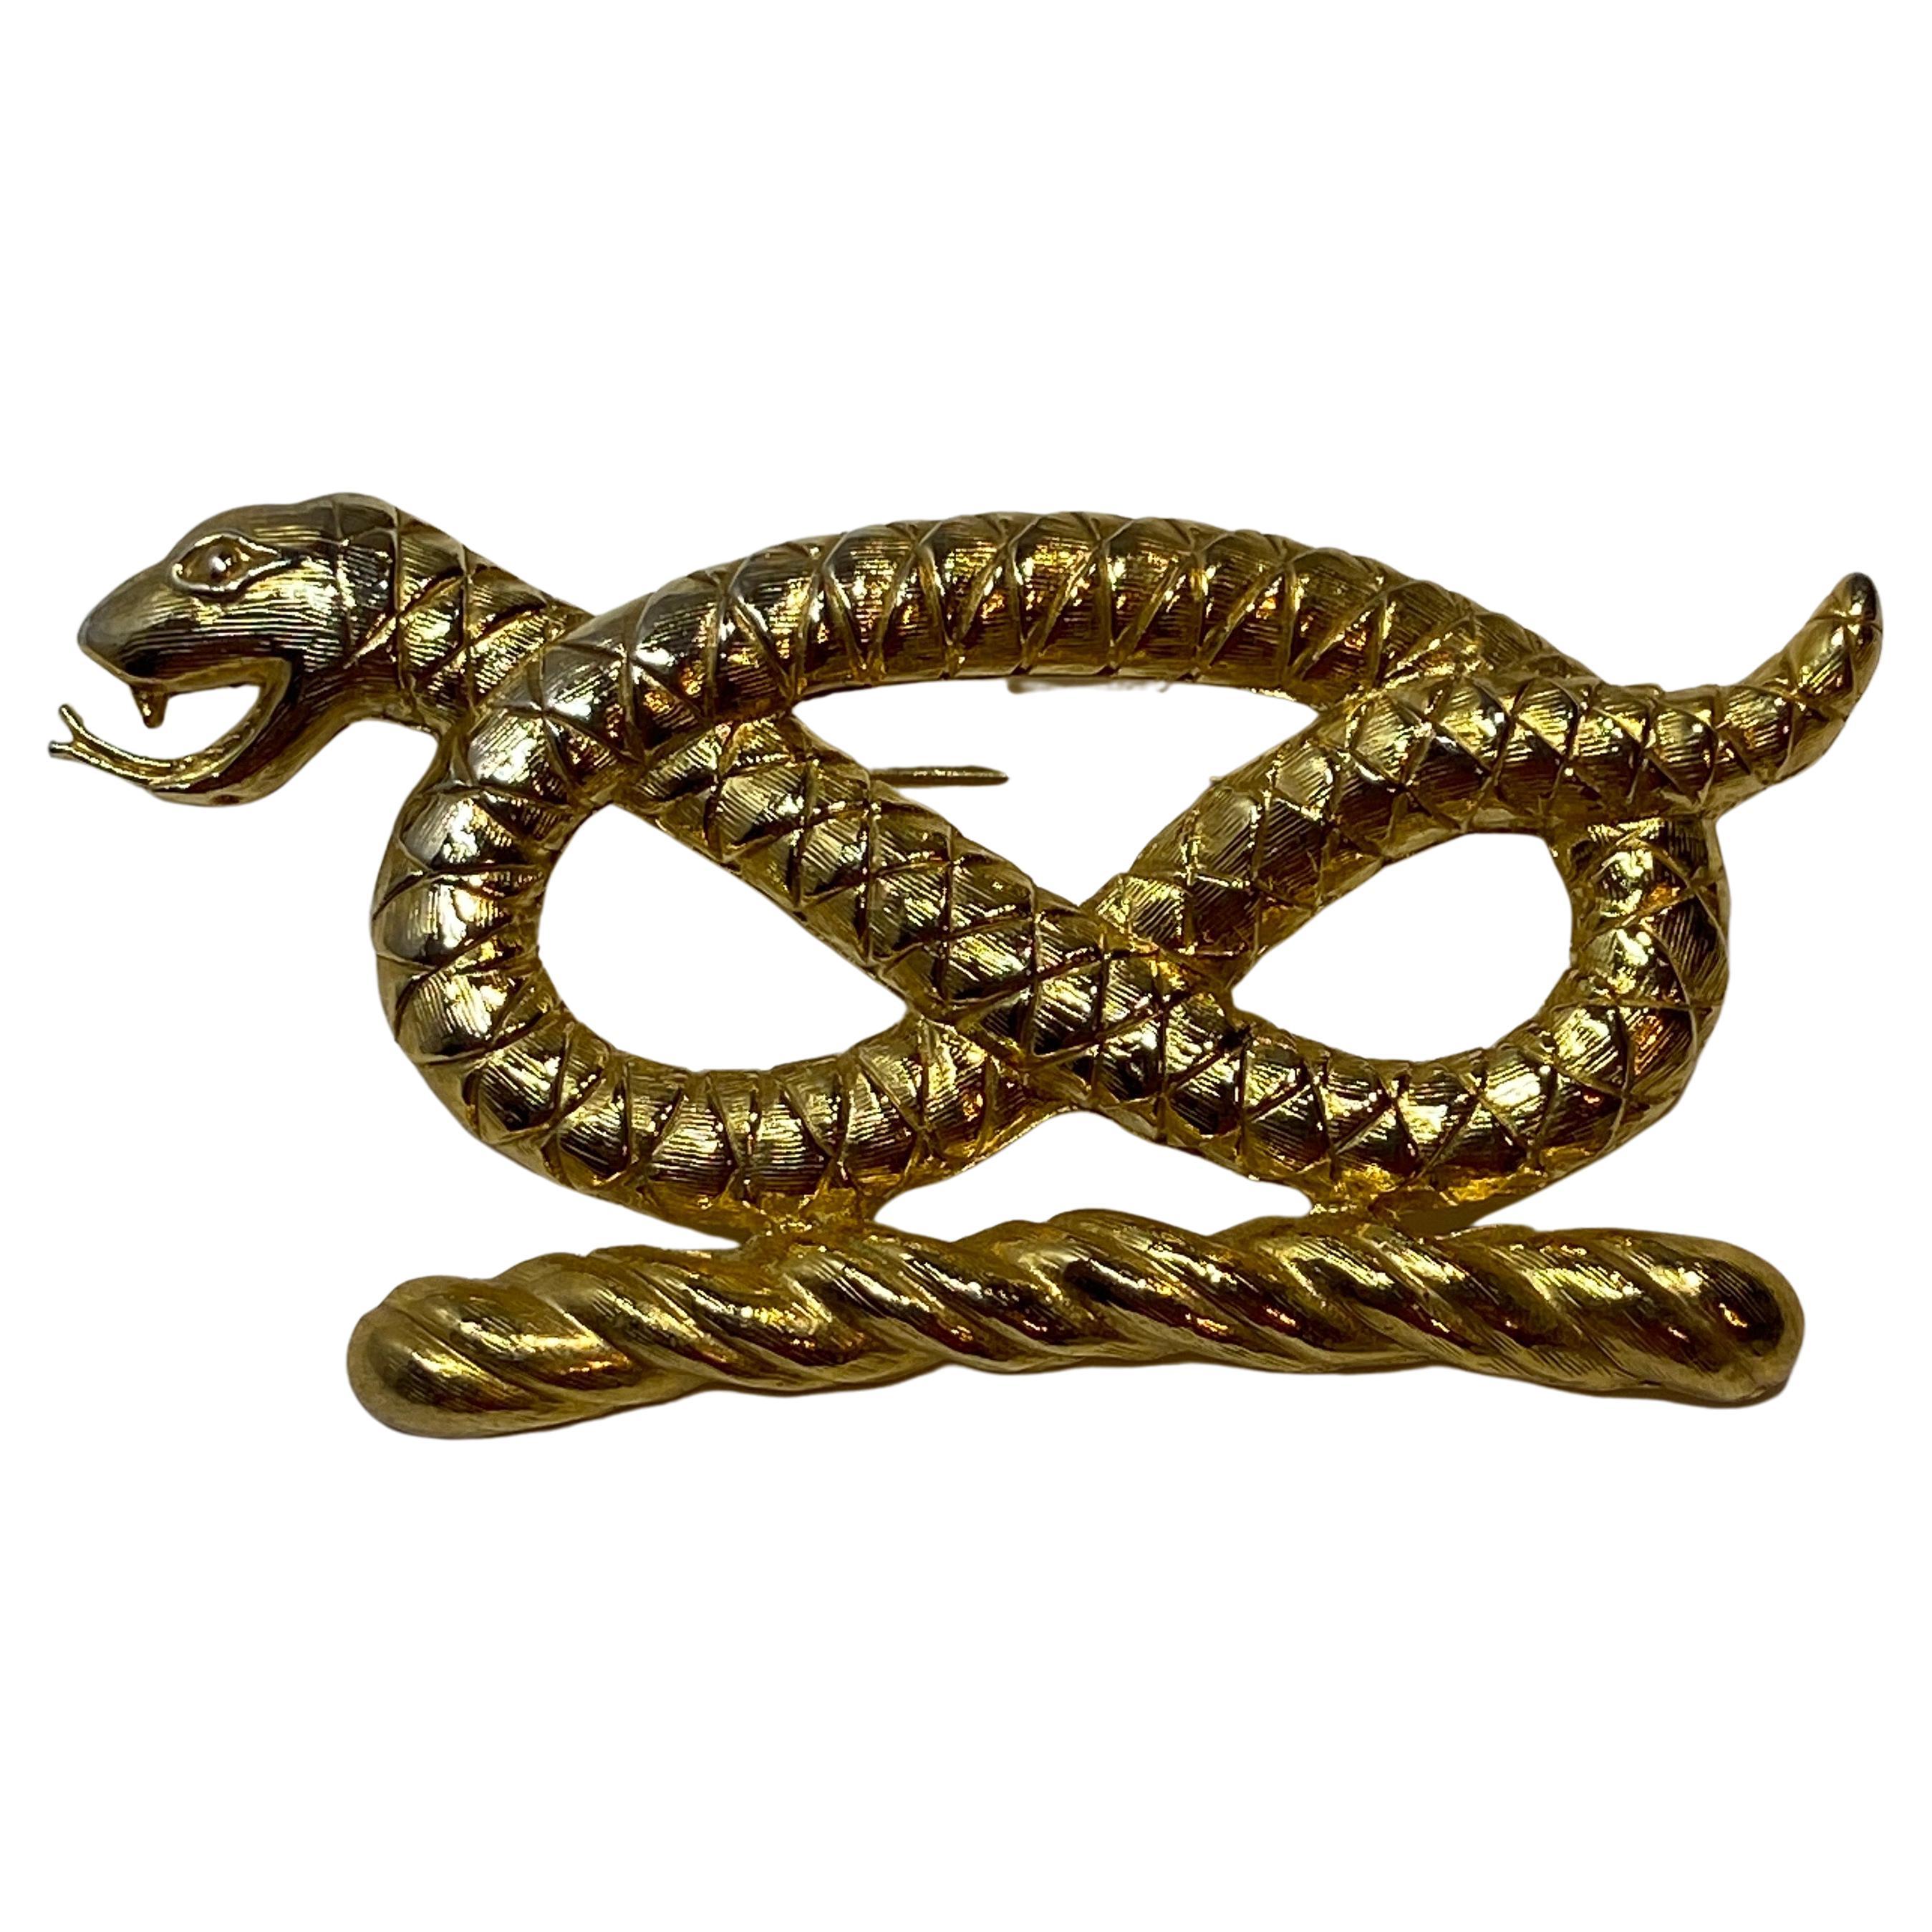 Polished Gilded Gold Hardware "Protective Snake" Brooch For Sale